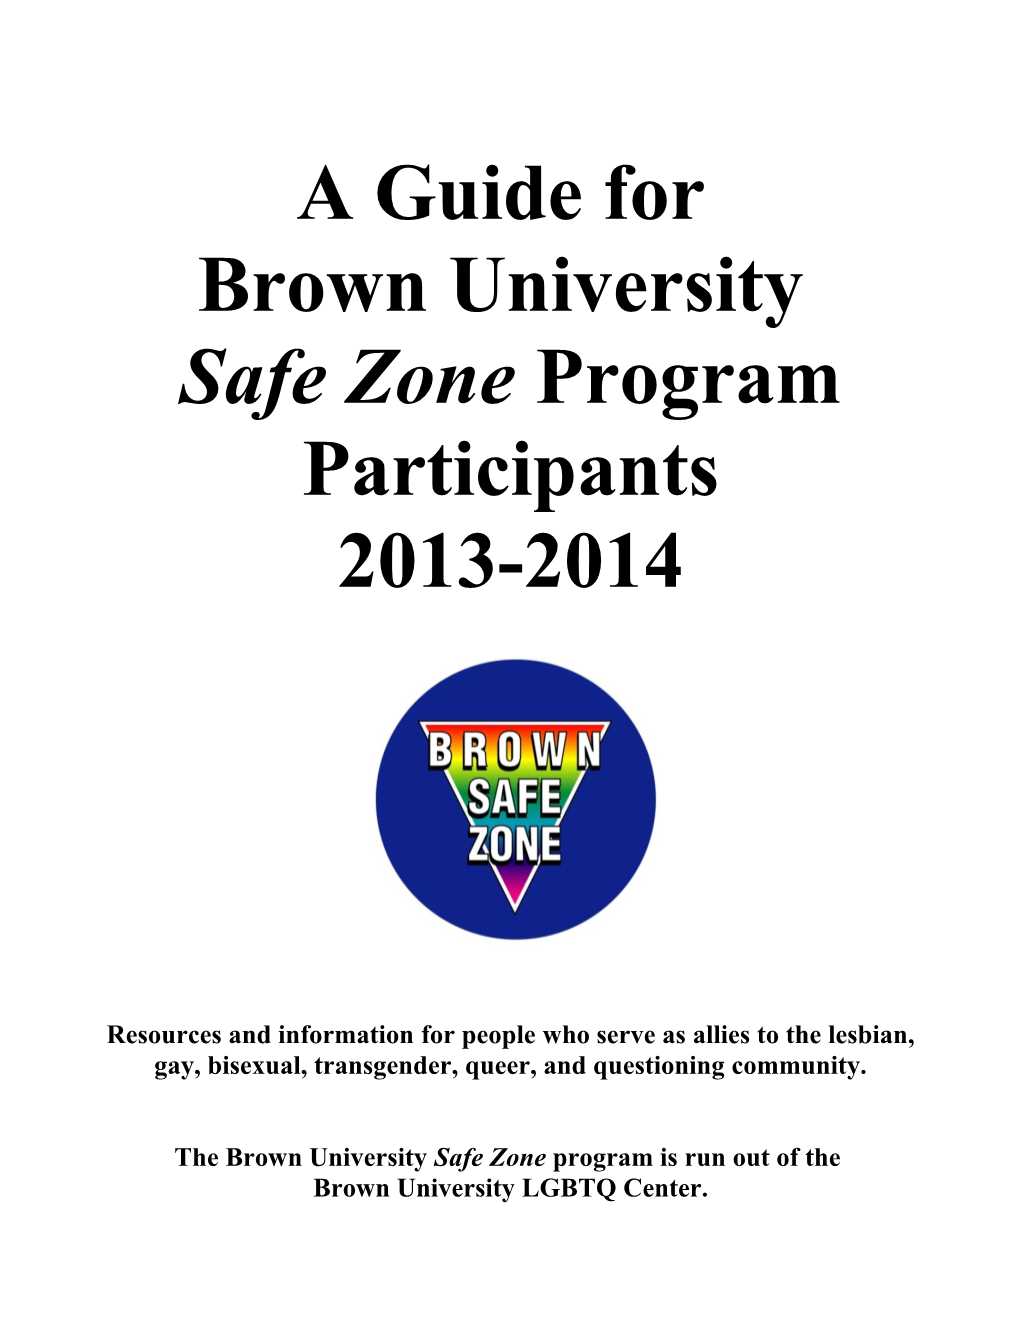 Safe Zone Program Participants